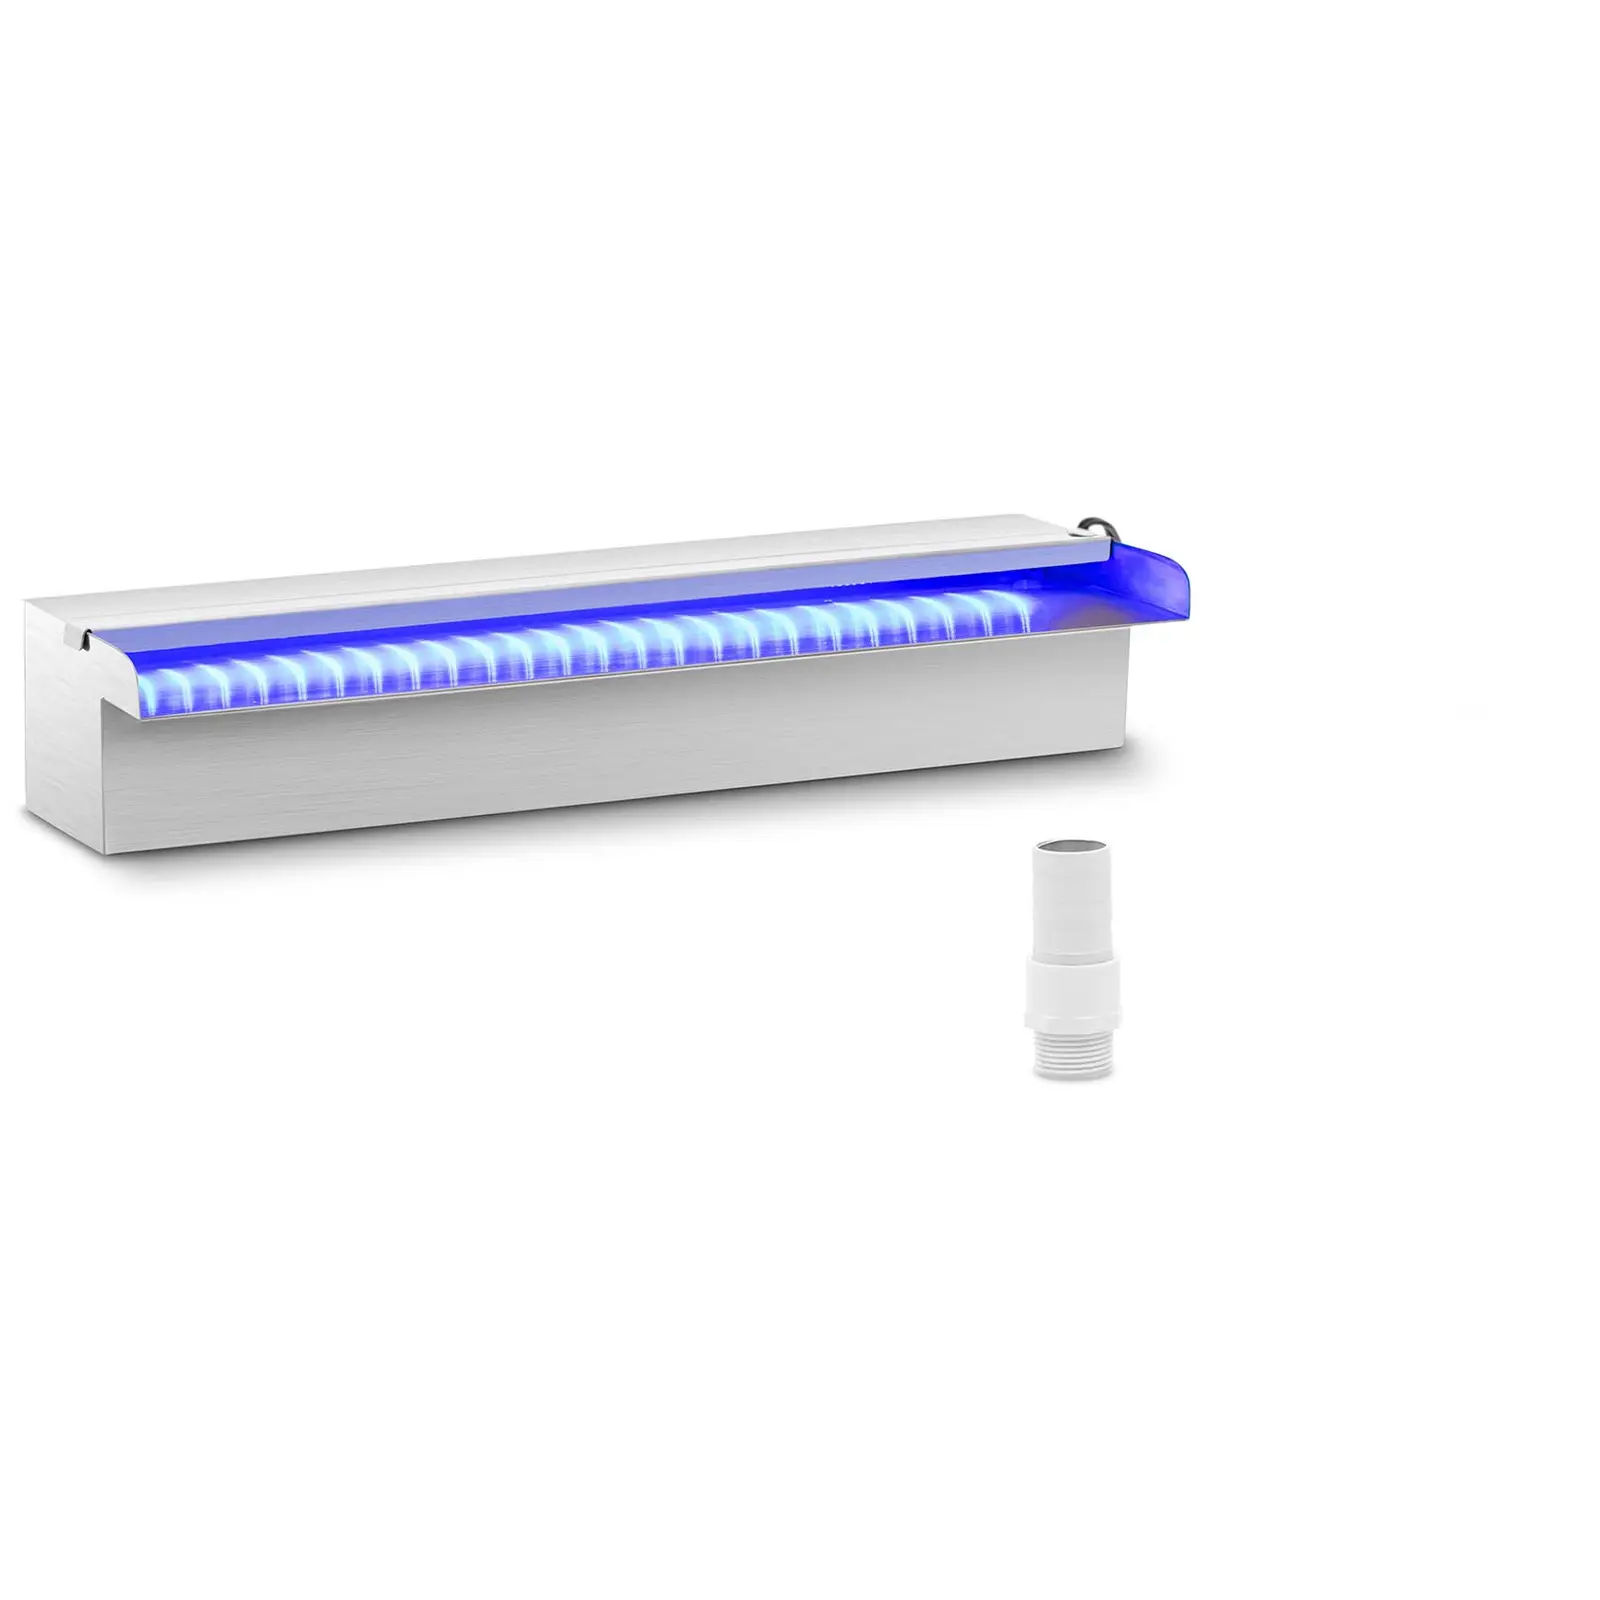 Medence szökőkút - 45 cm - LED világítás - kék / fehér - nyitott vízkifolyó